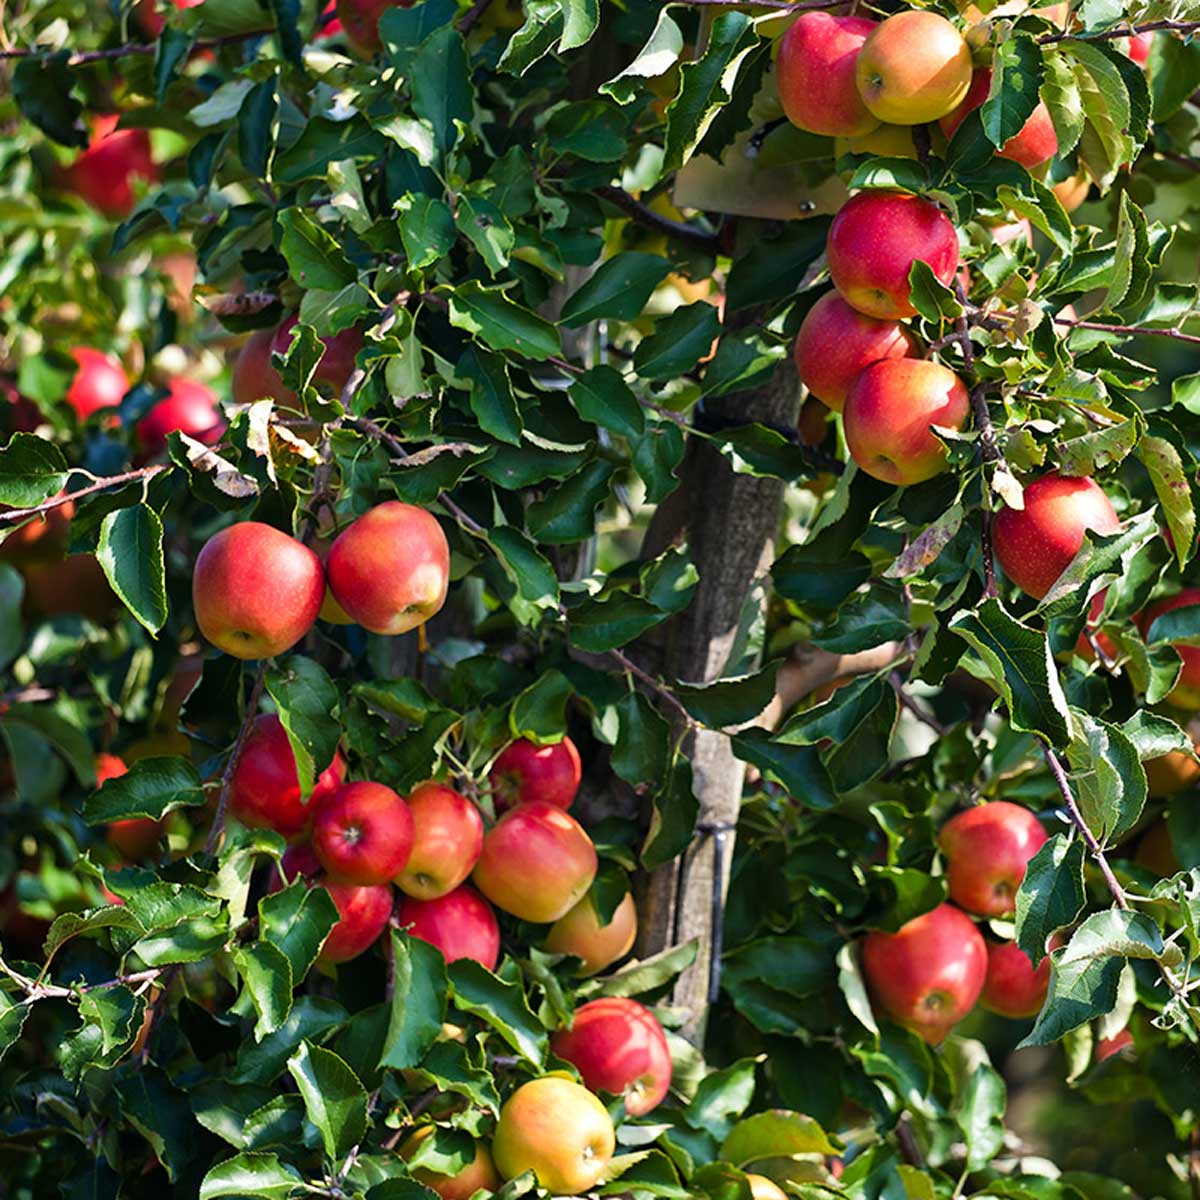 Summerred-epler på epletre, klare til høsting